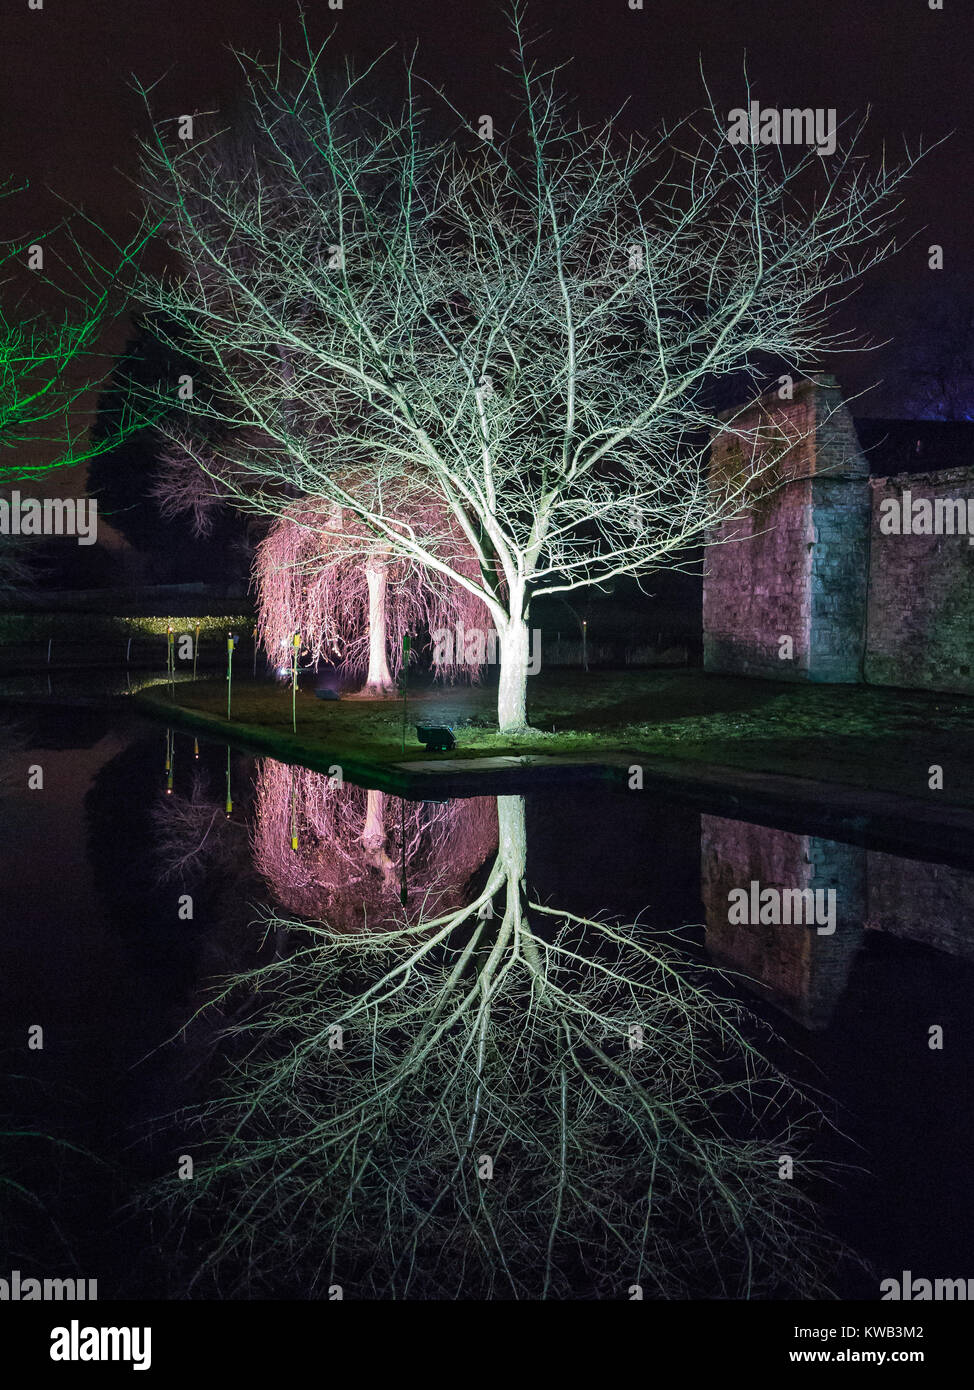 Eltham Palace moat reflection at night Stock Photo